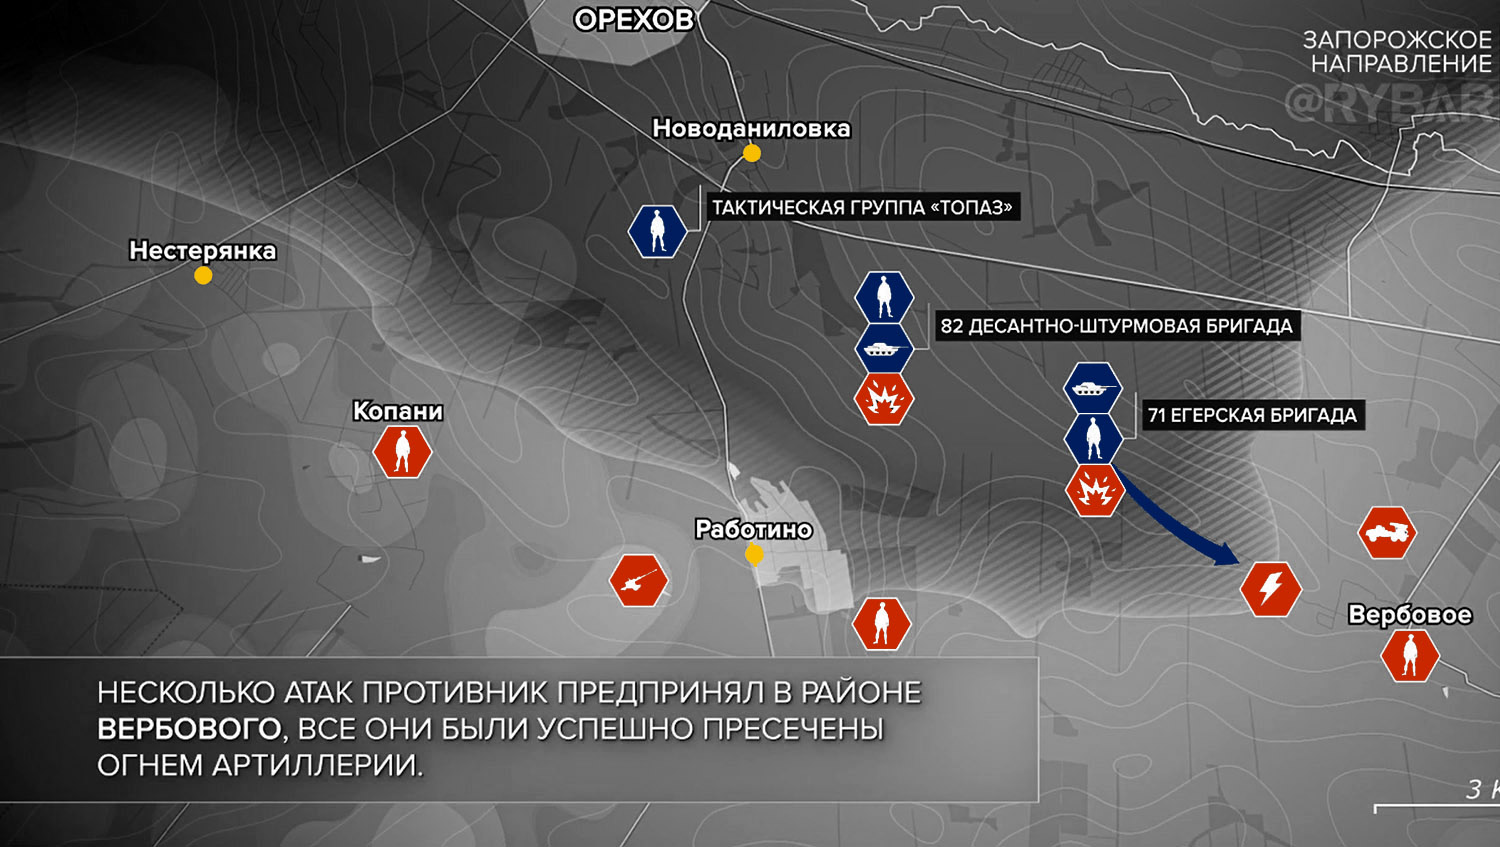 Карта боевых действий на Украине, Запорожское направление, к утру 12.11.23 г. Карта СВО от «Рыбарь».